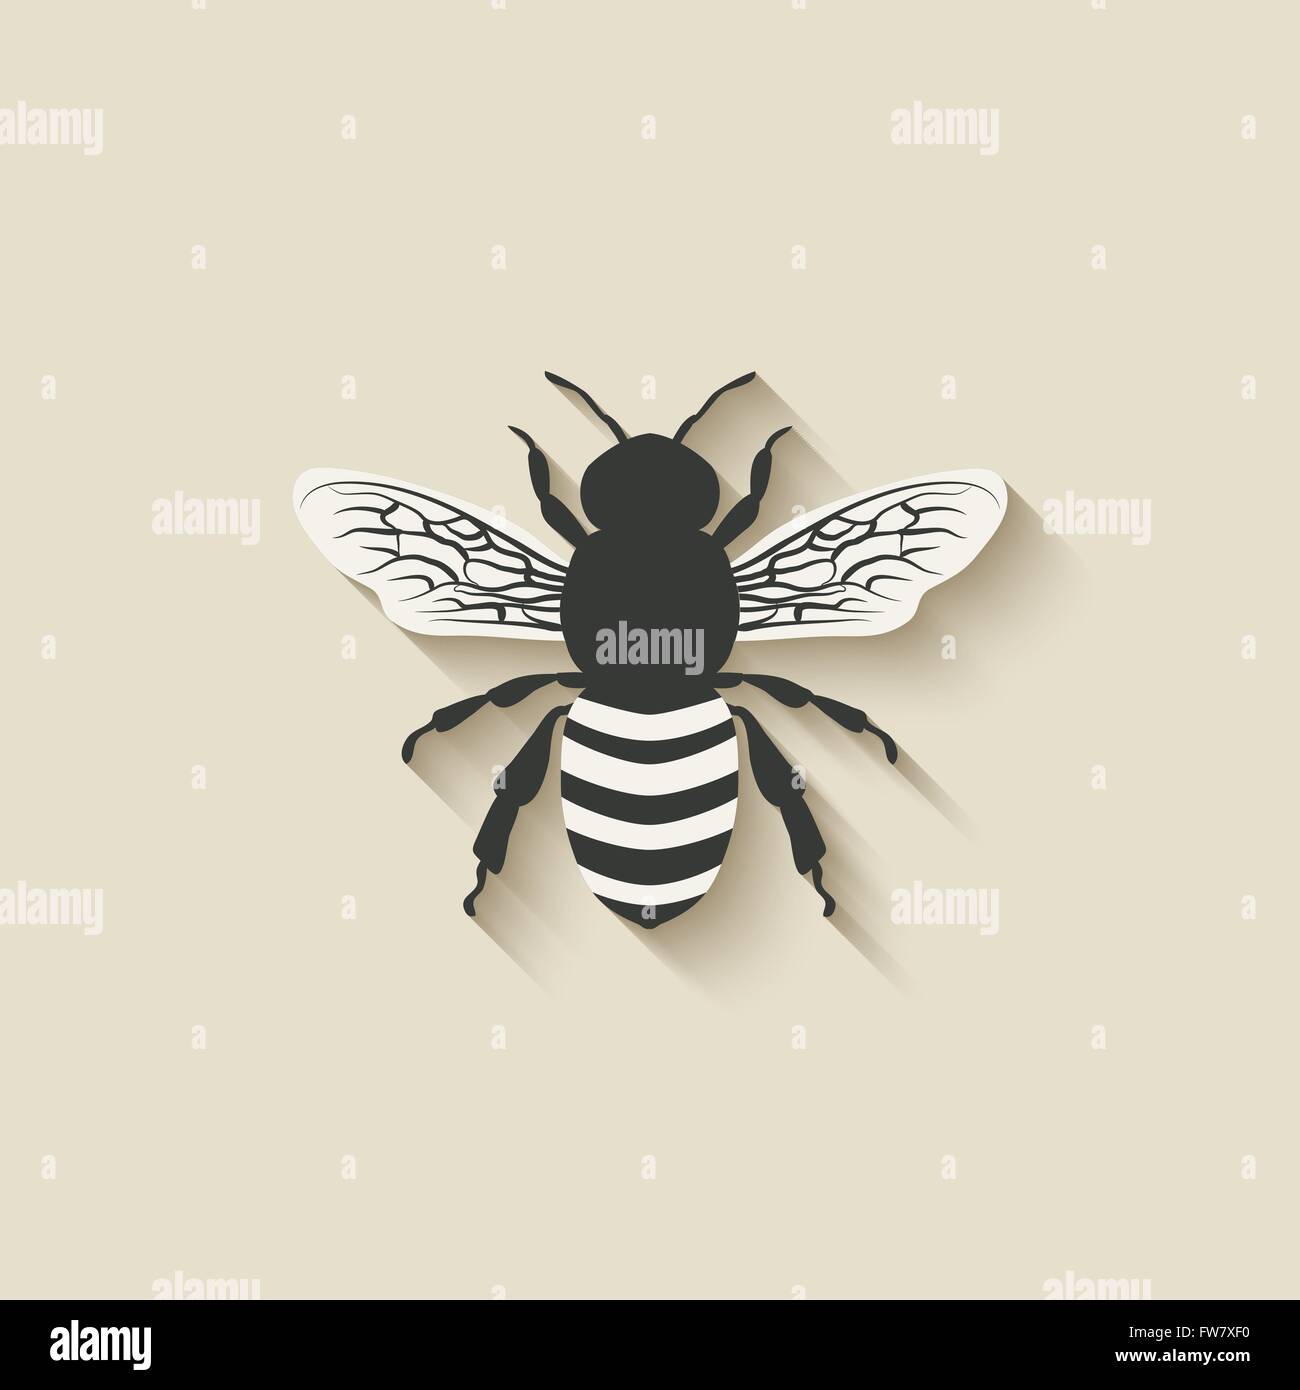 Icônes d'insectes abeilles - vector illustration EPS 10. Illustration de Vecteur